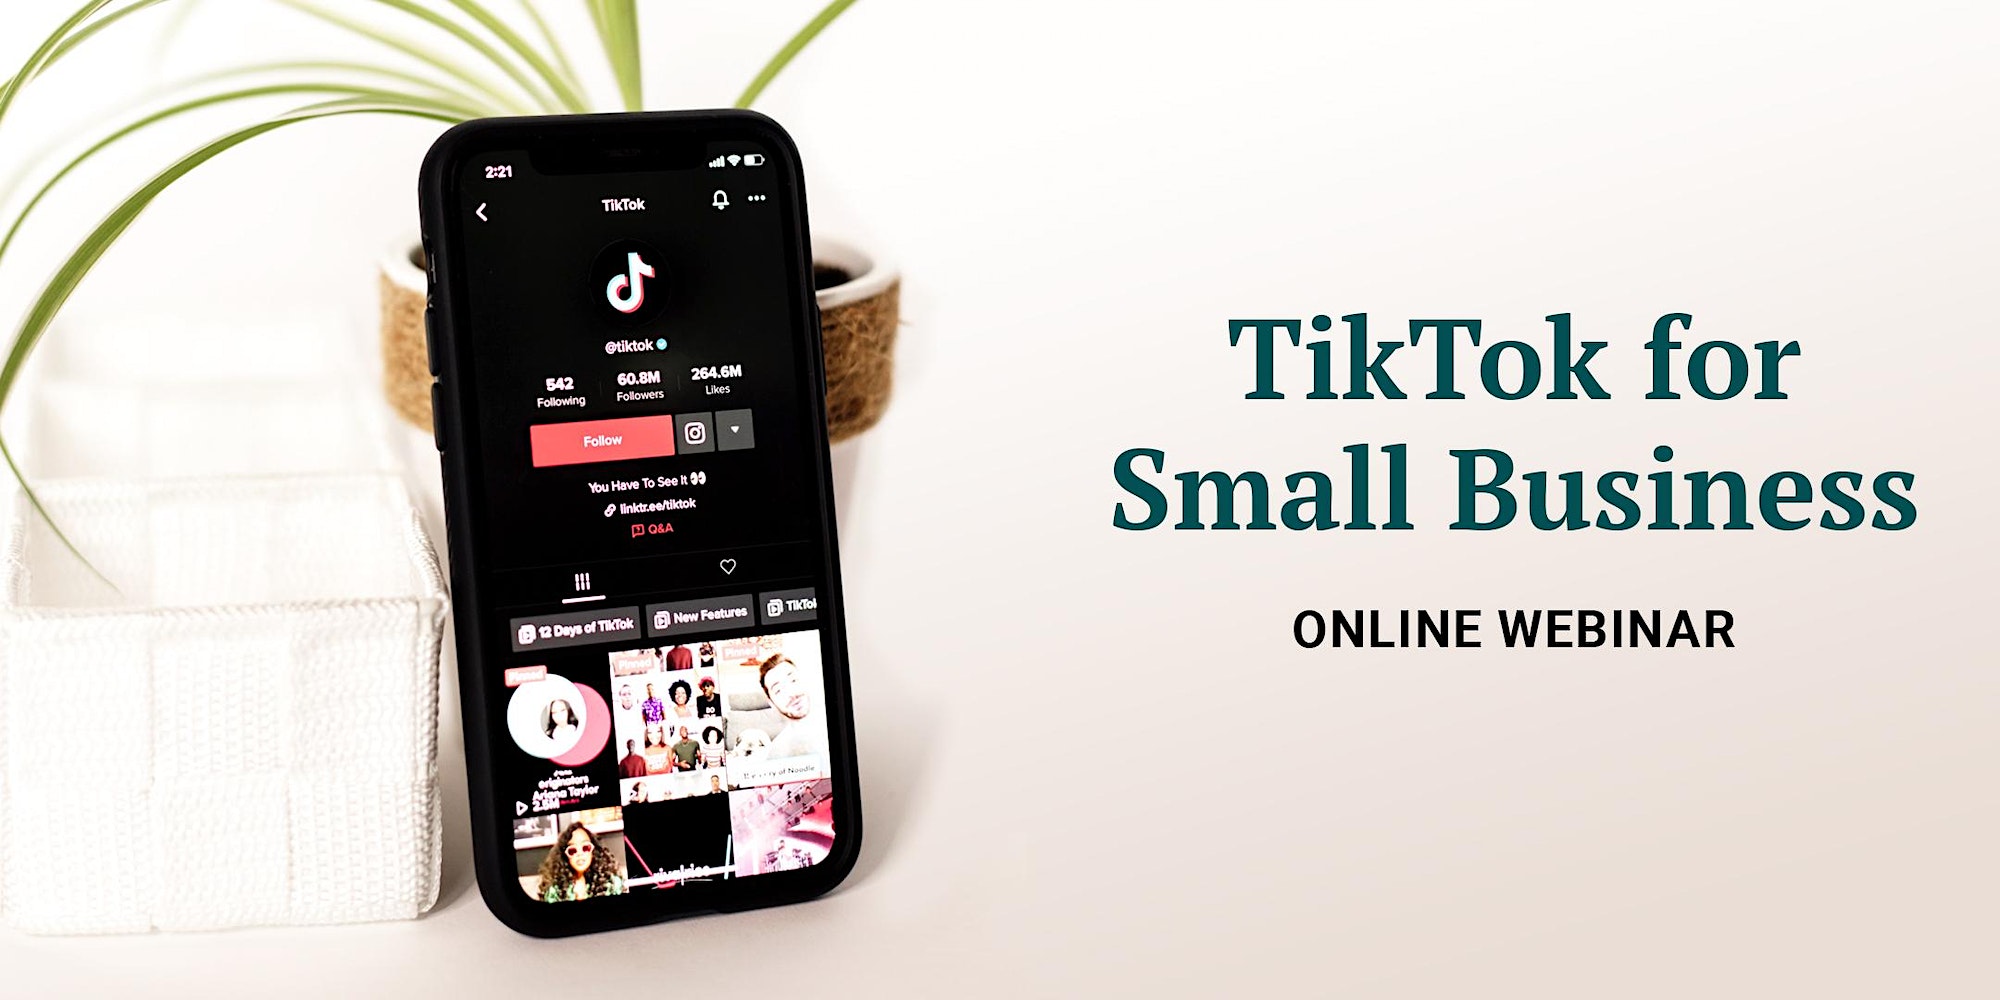 TikTok for Small Business: Online Webinar